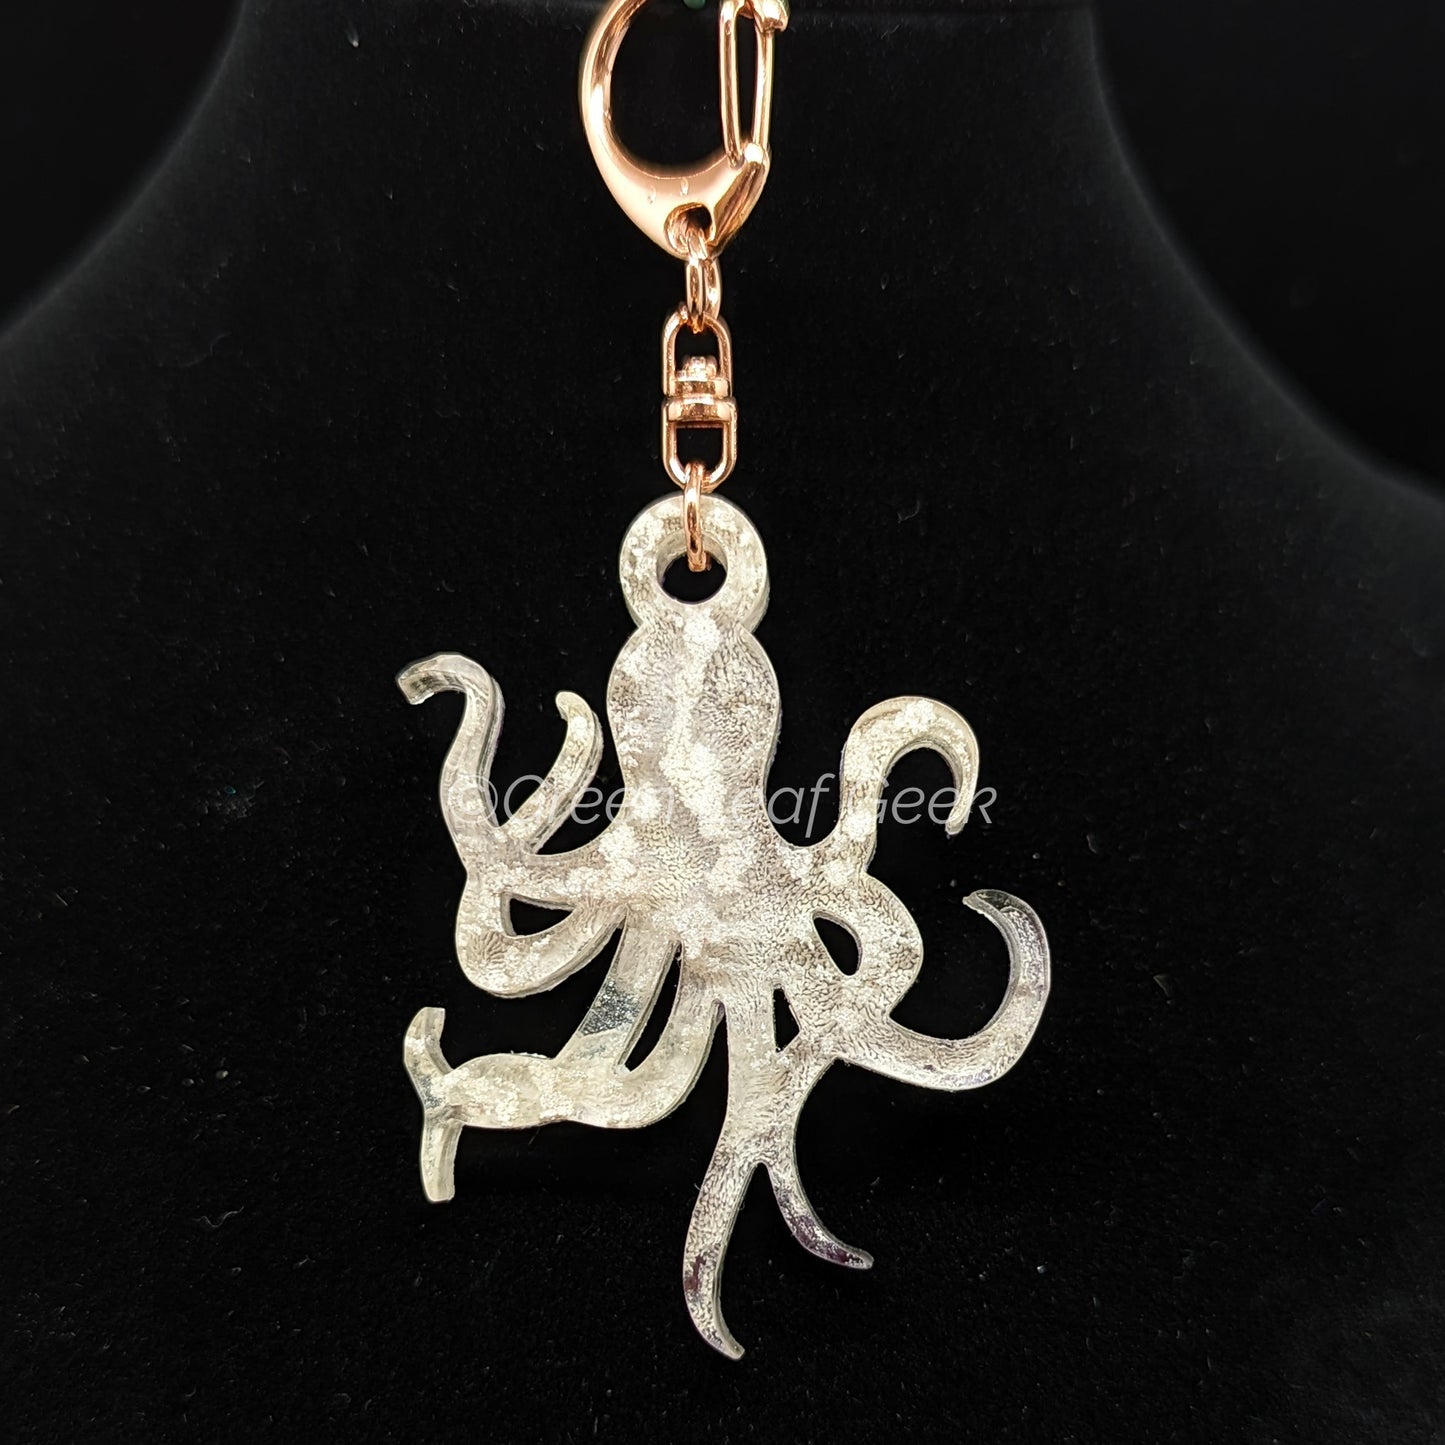 Handmade Resin Cephalopod Keychain